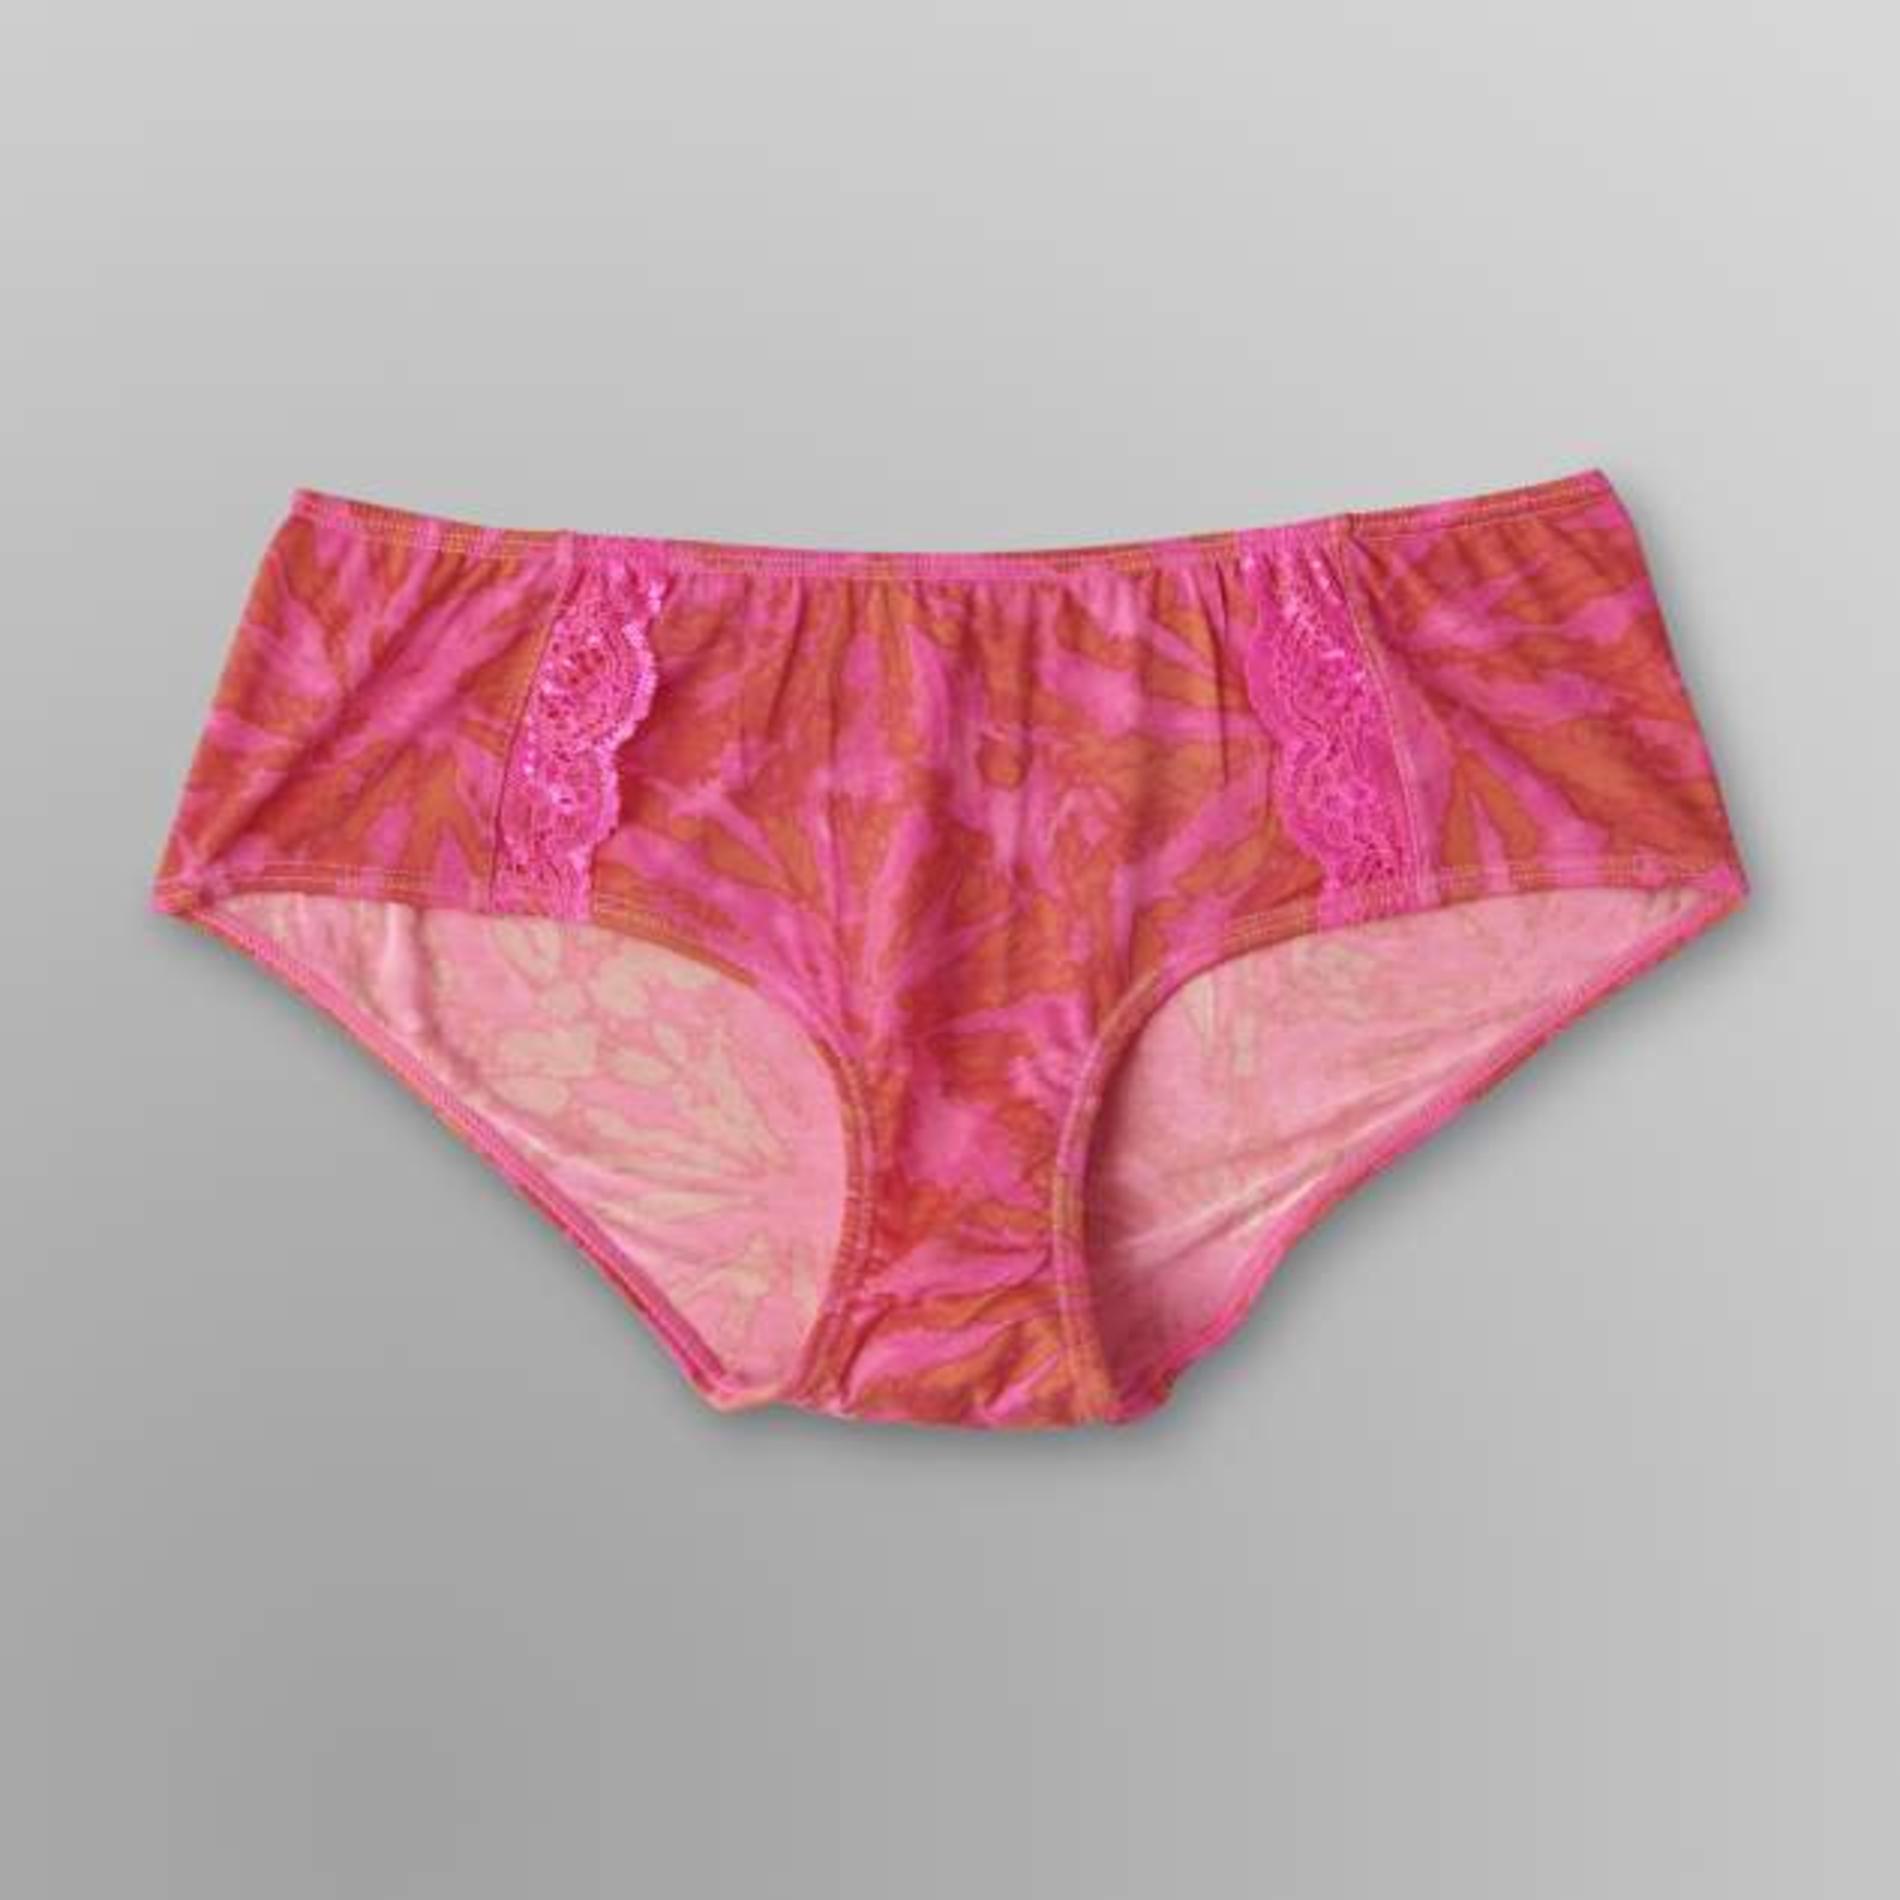 Joe Boxer 2-Pack Women's Hipster Panties - Tie-Dye